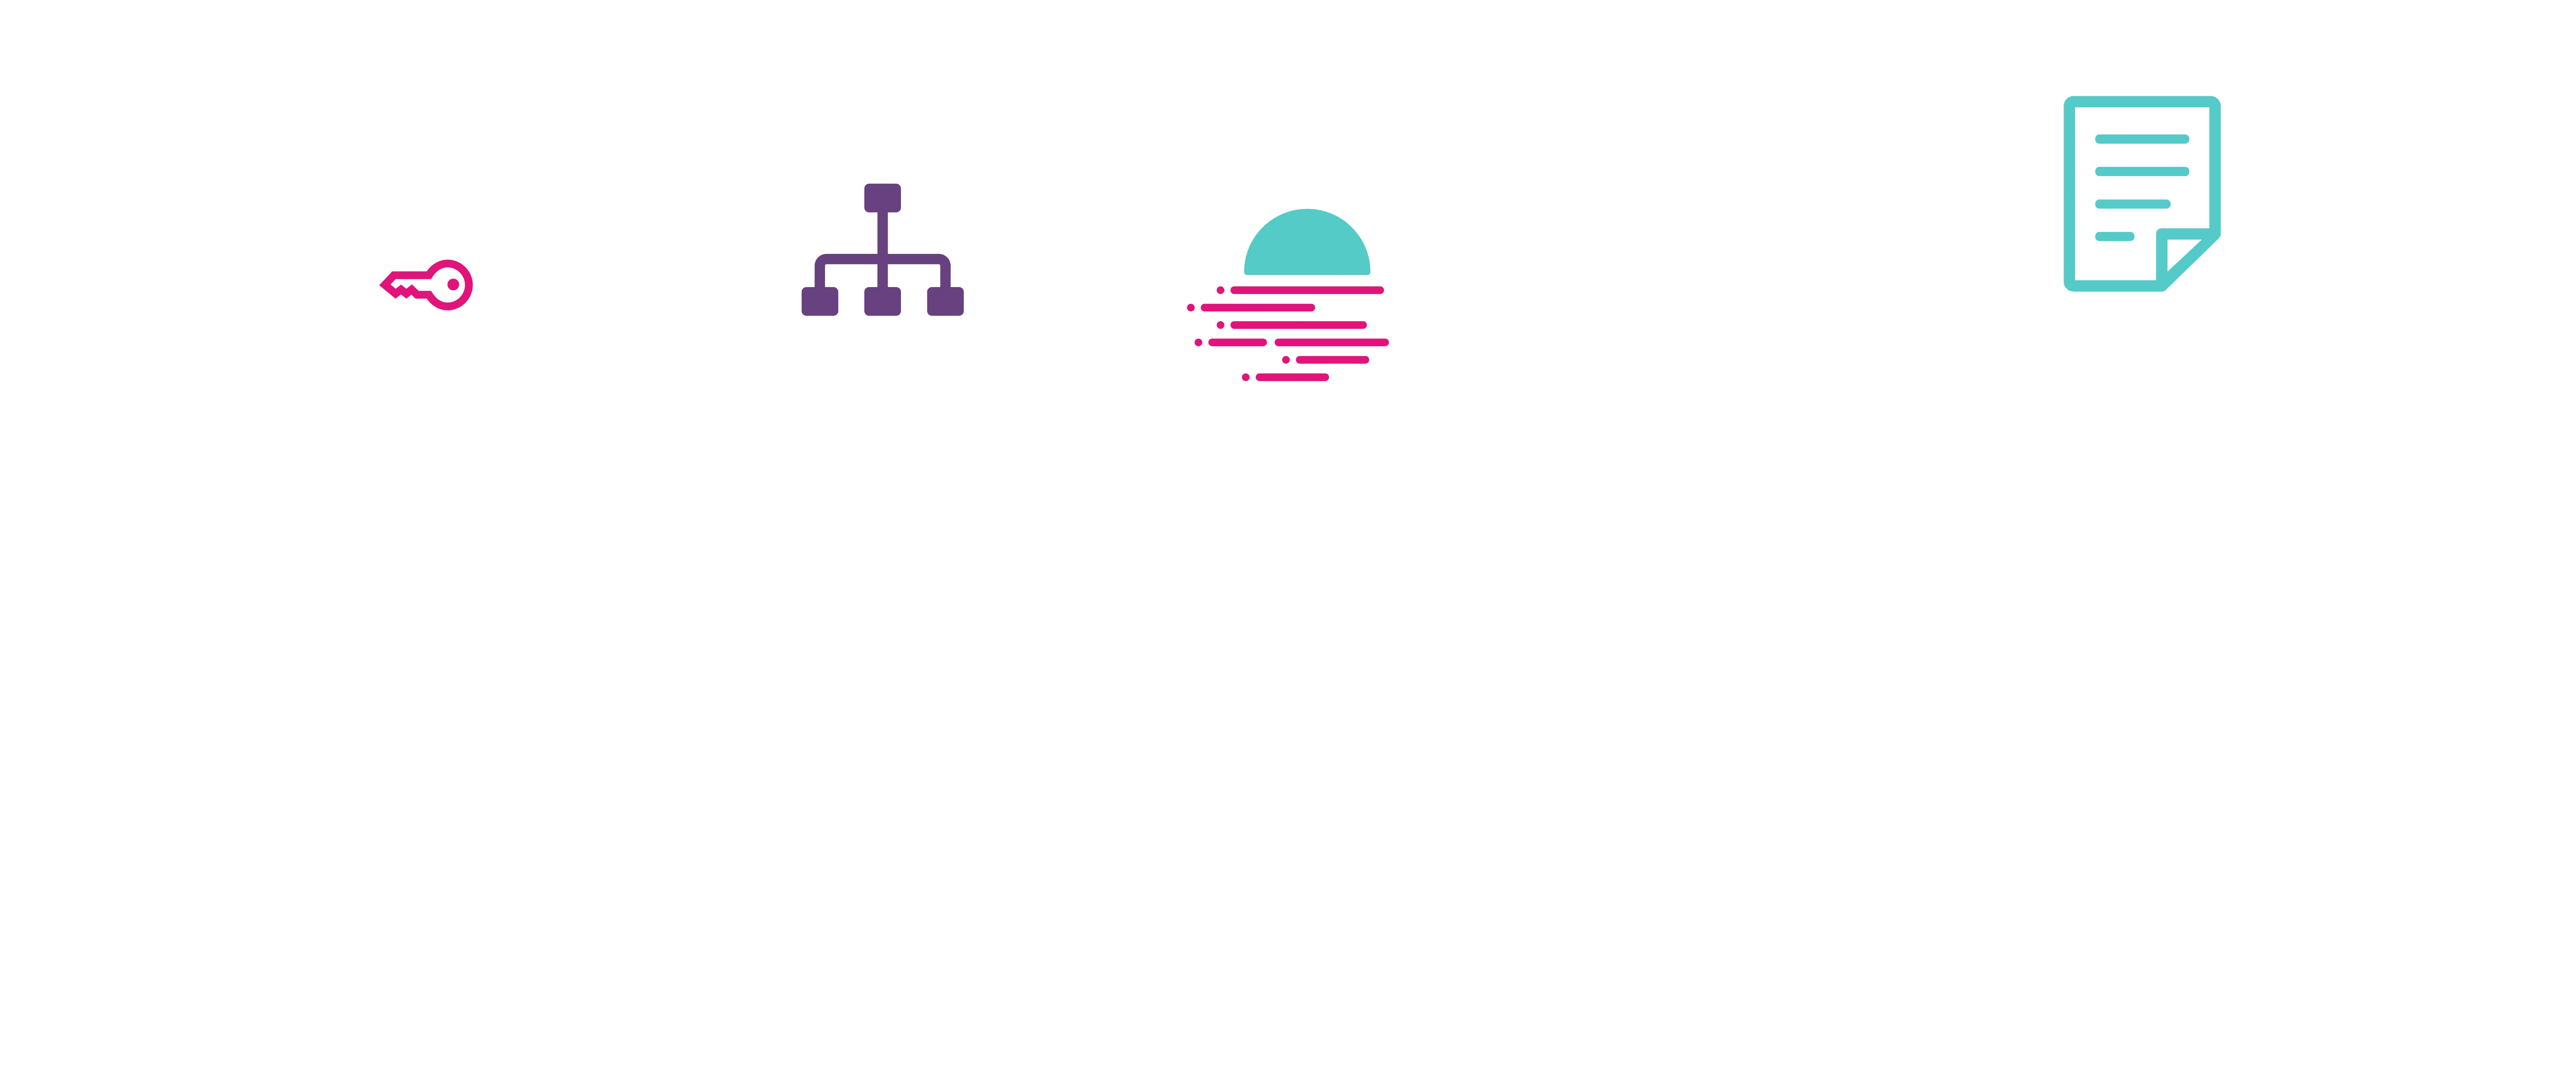 Moonbeam balances diagram